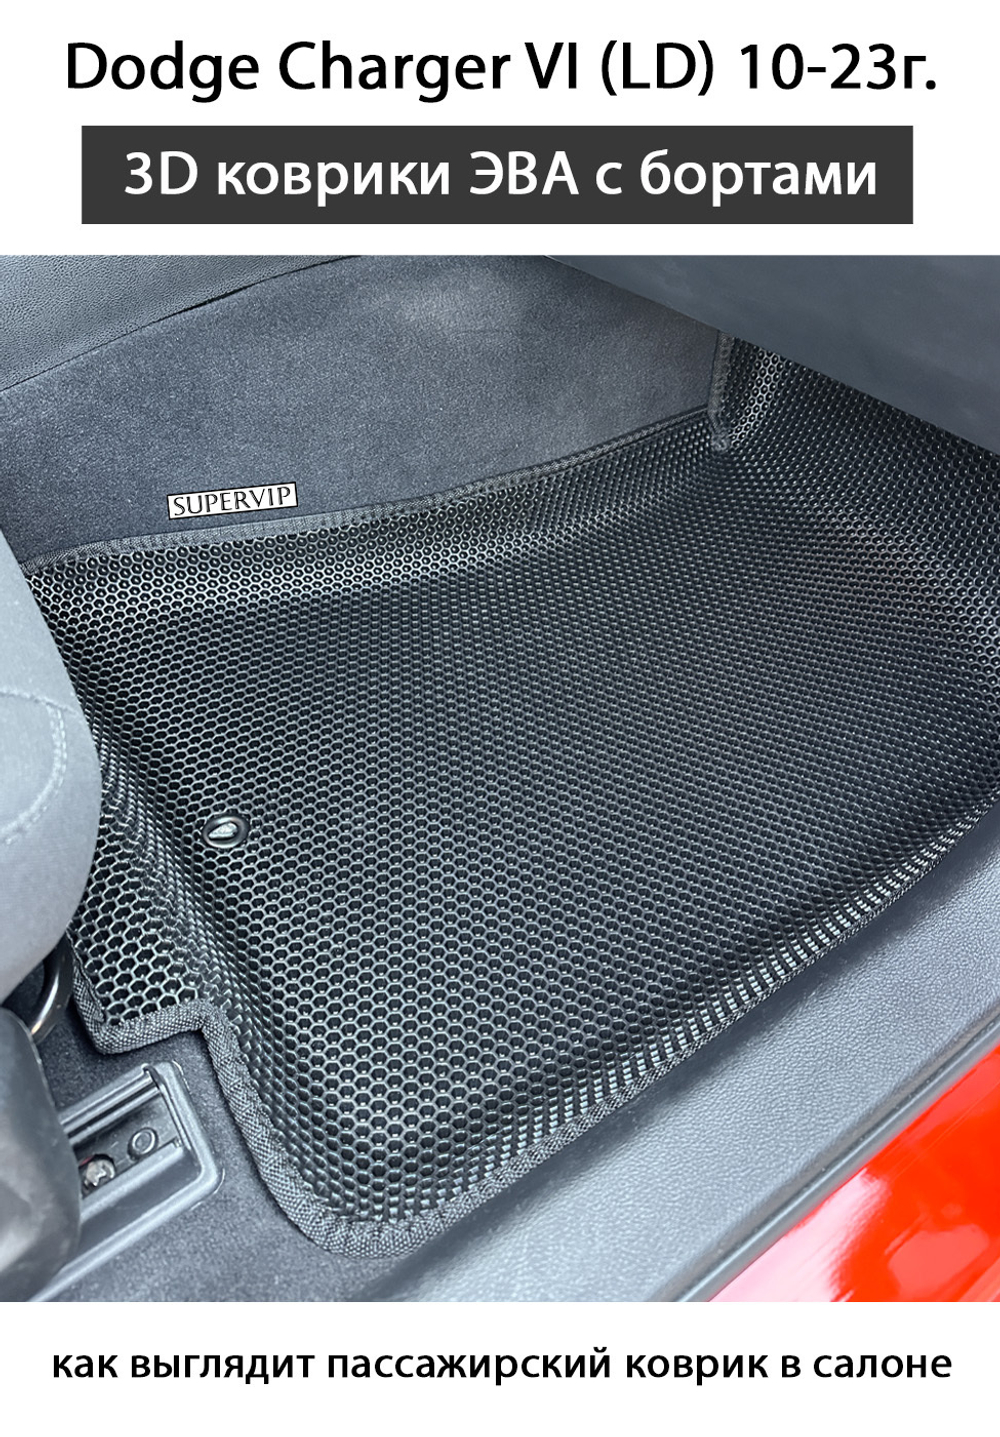 Передние автомобильные коврики ЭВА с бортами для Dodge Charger VI (LD) 10-23г.